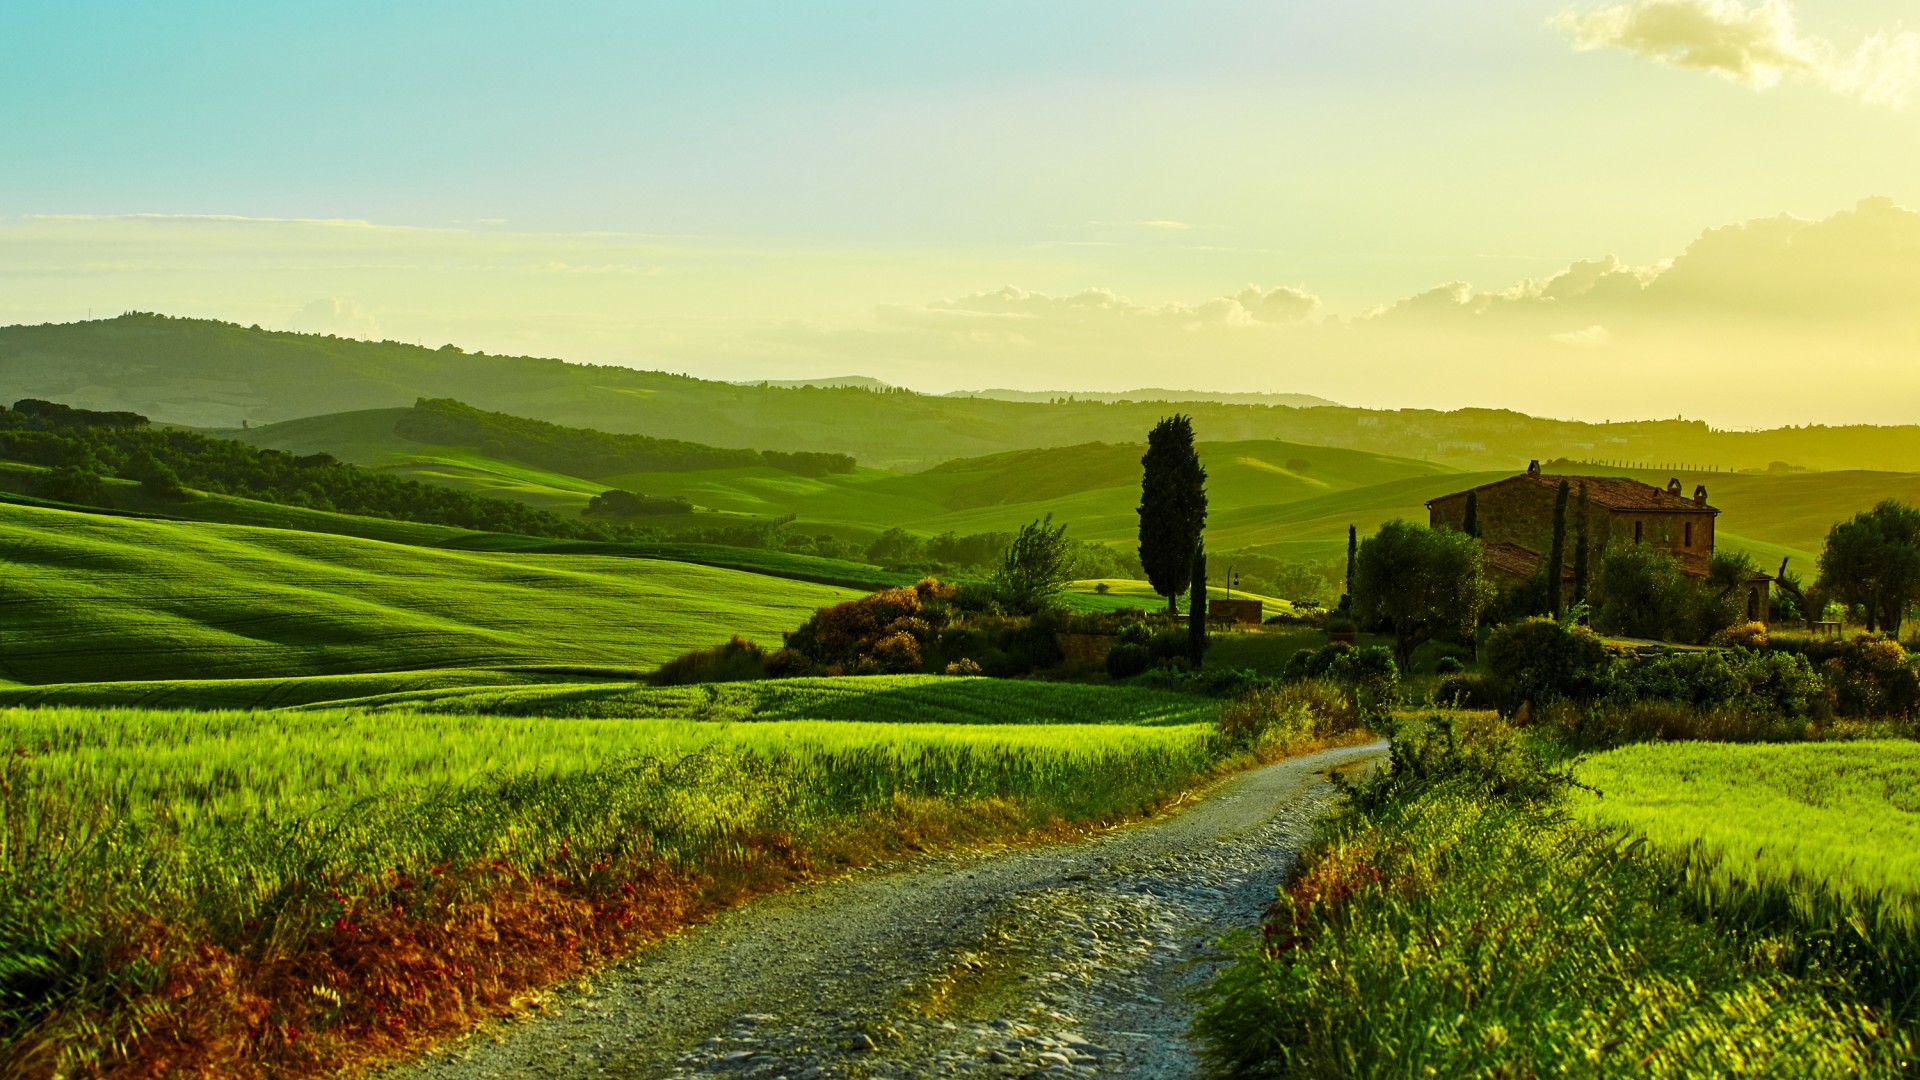 意大利托斯卡纳,田野,草地,风景桌面壁纸